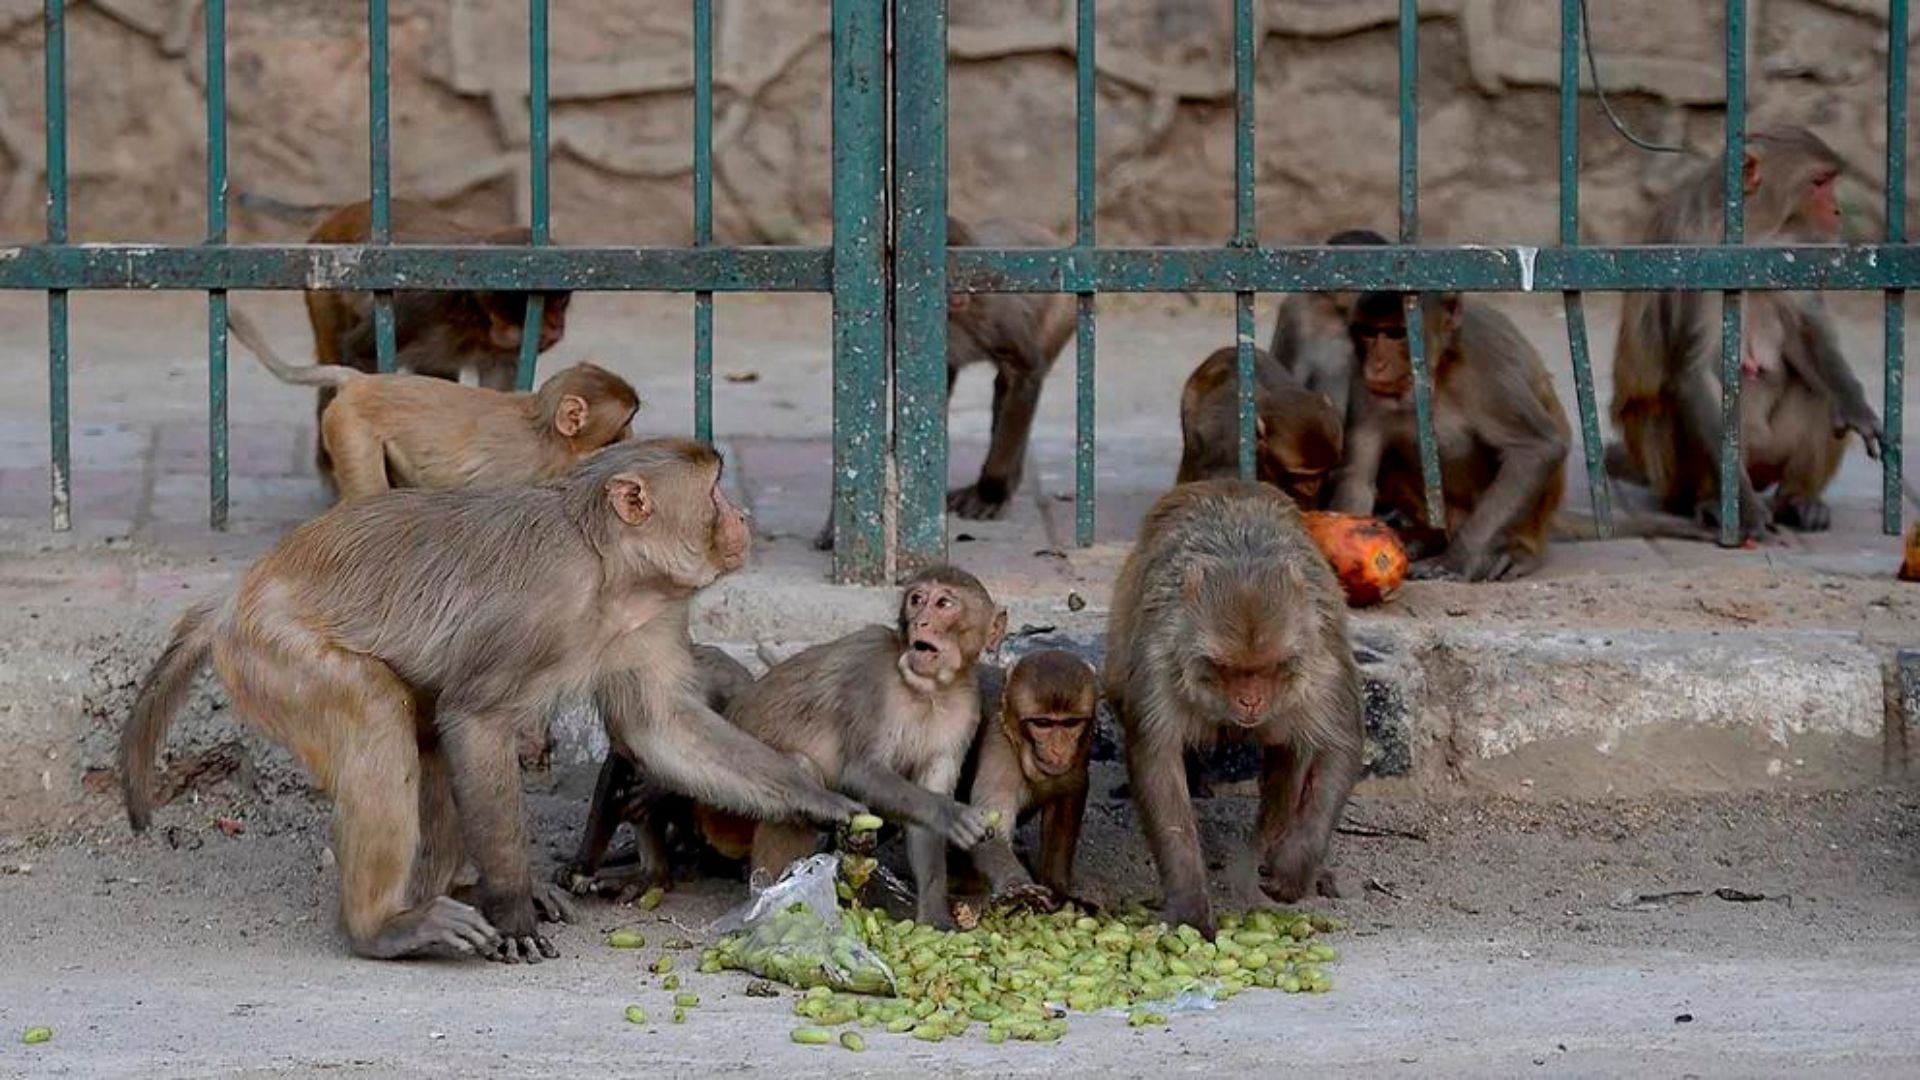 Monos en las calles, el peligro de la urbanización que atenta contra la vida silvestre de la India